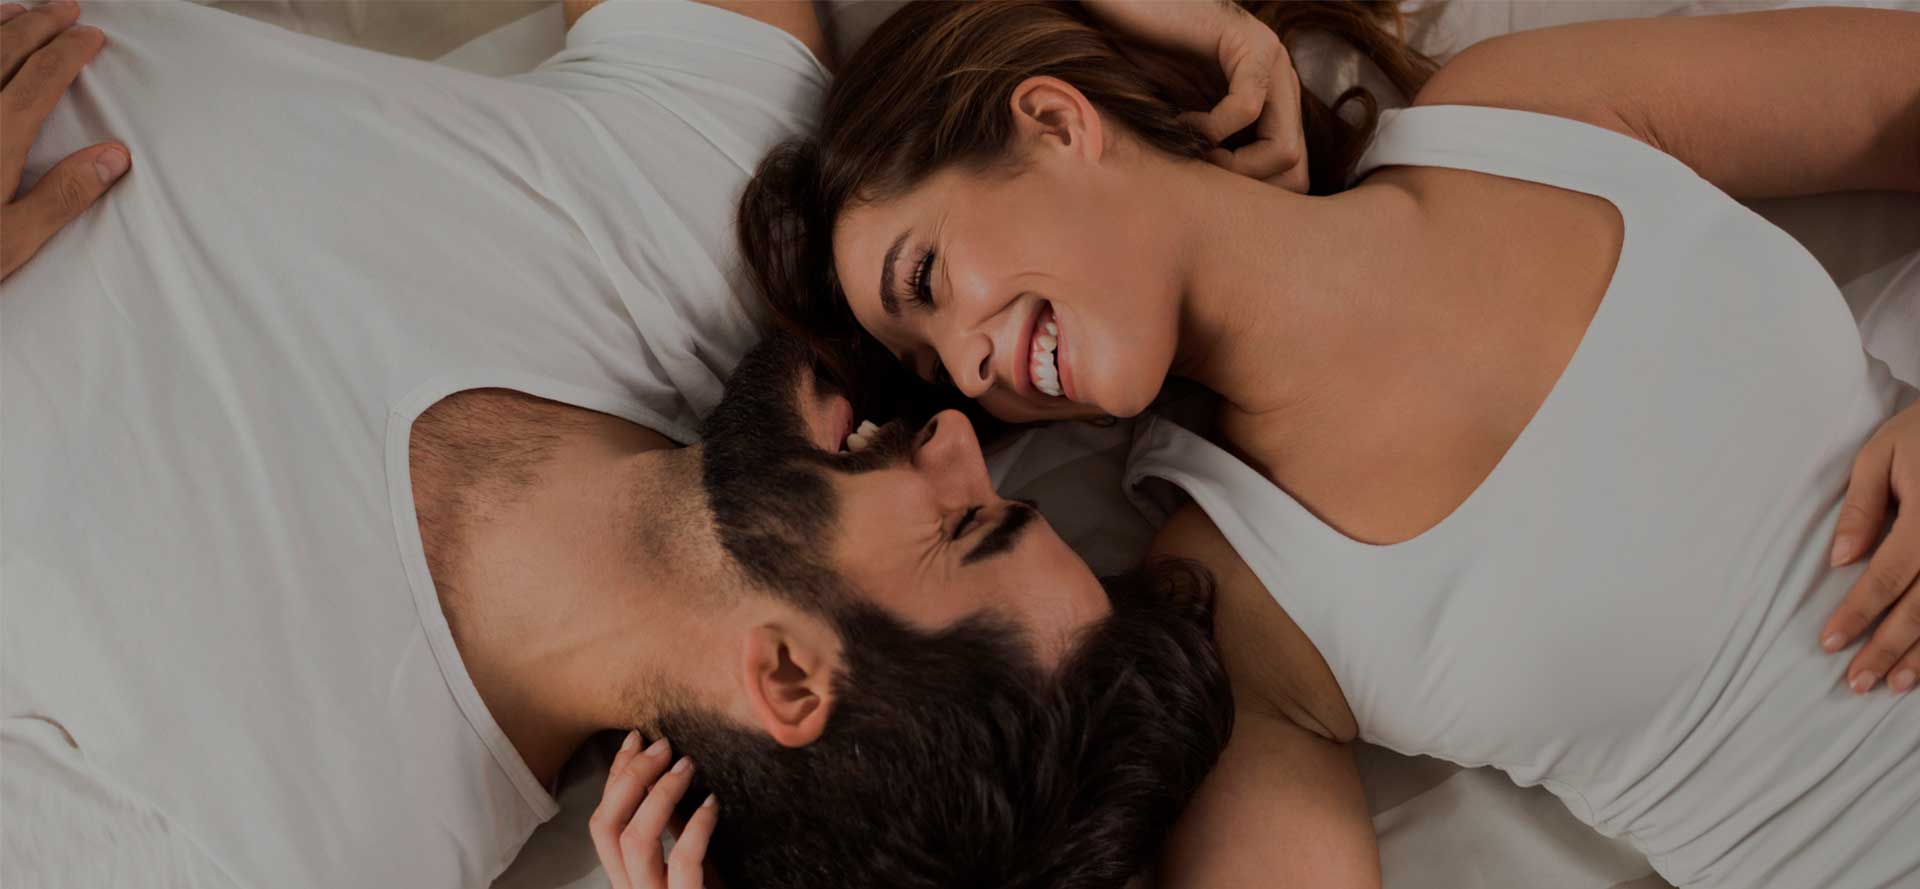 Mies ja nainen makaavat ja nauravat.